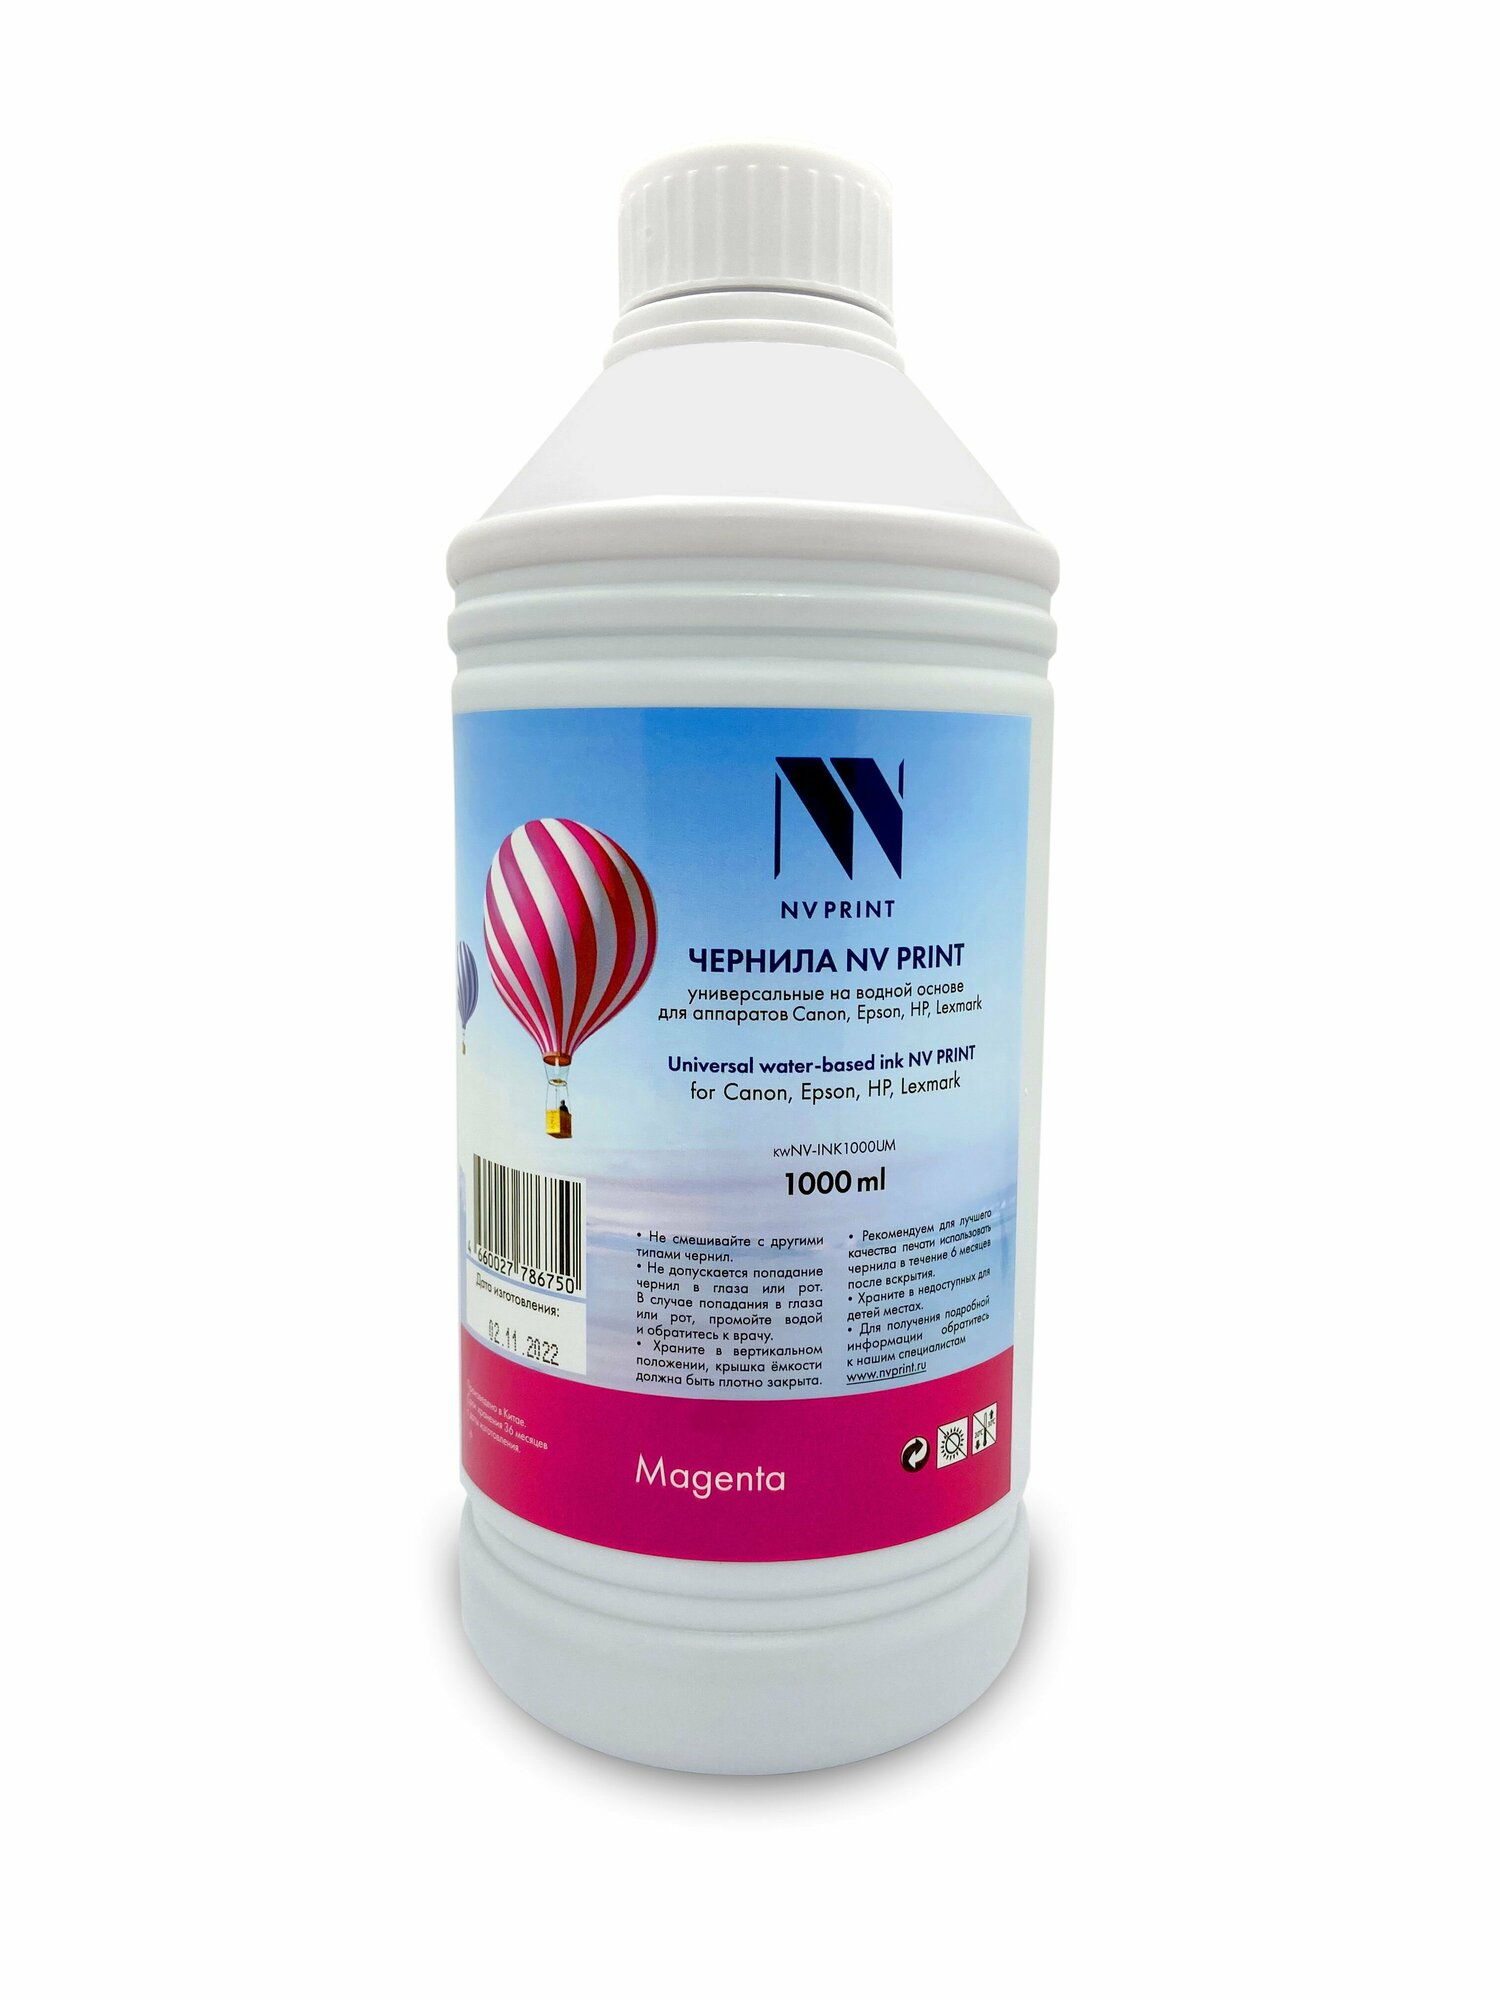 Чернила универсальные на водной основе для Сanon, Epson, НР, Lexmark (1000 ml) Magenta